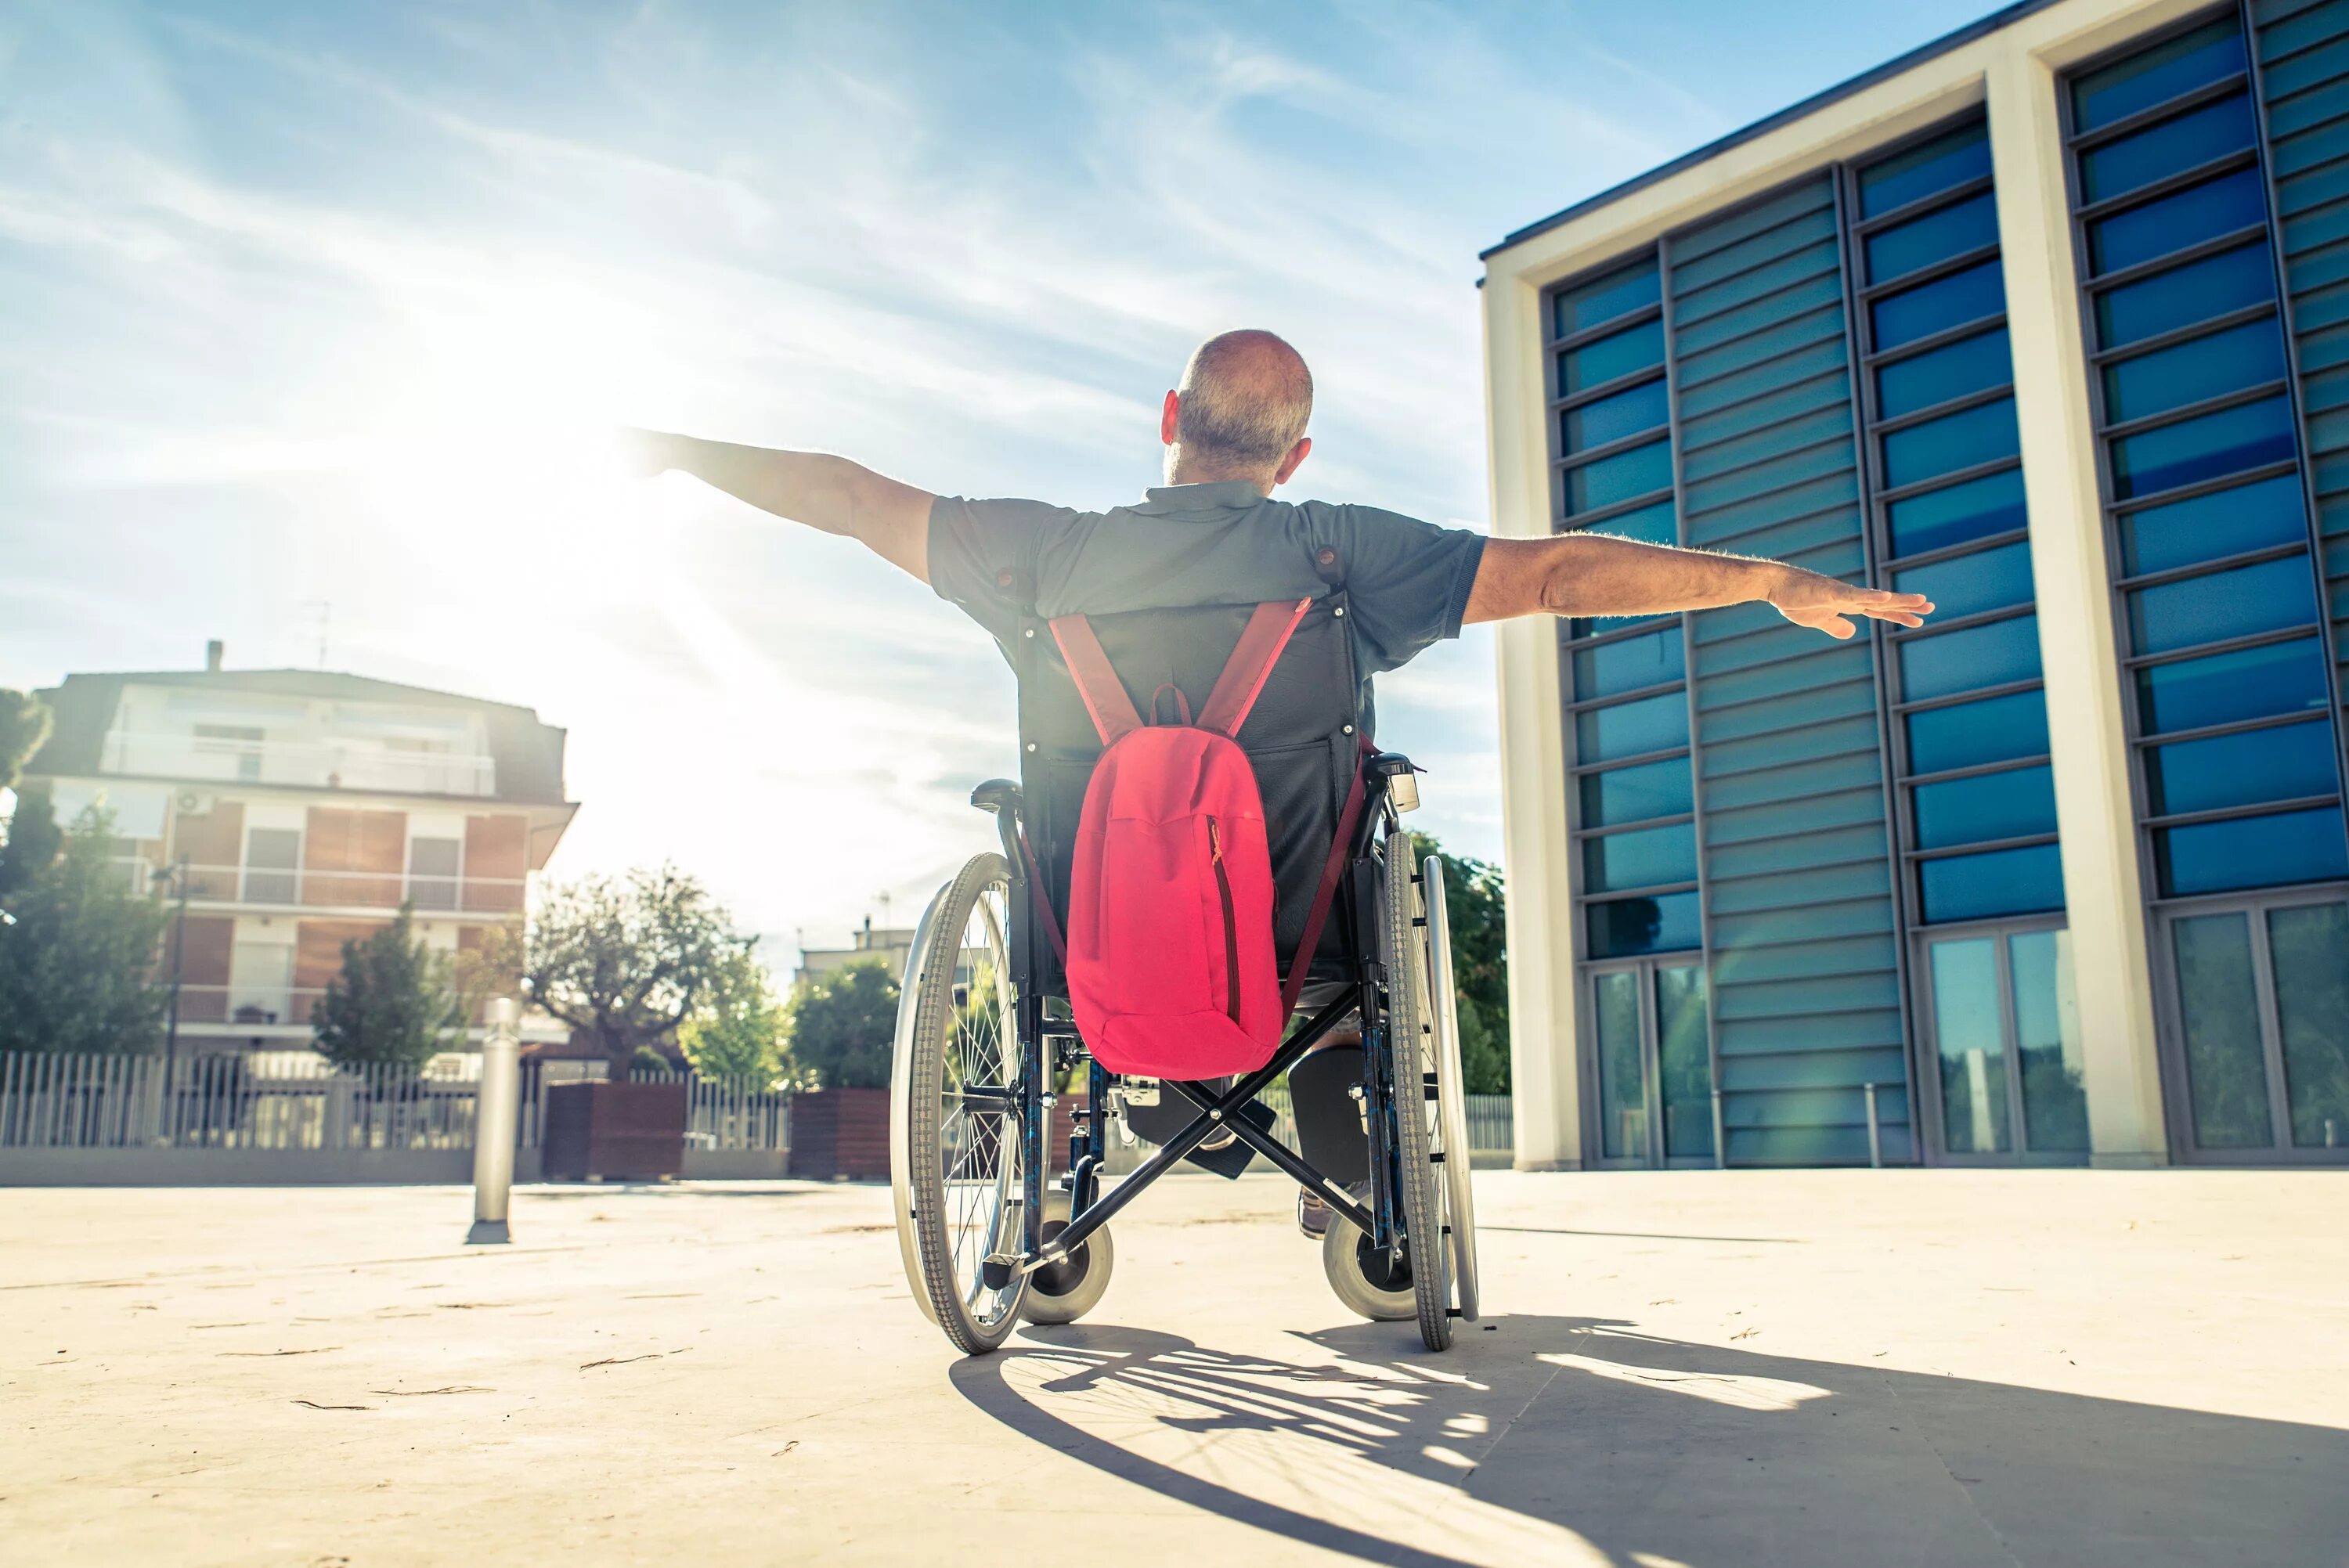 Дисабилити сайт для инвалидов. Люди с ограниченными возможностями. Люди сограничеными возможностями. Инвалиды люди с ограниченными возможностями. Счастливый человек на коляске.